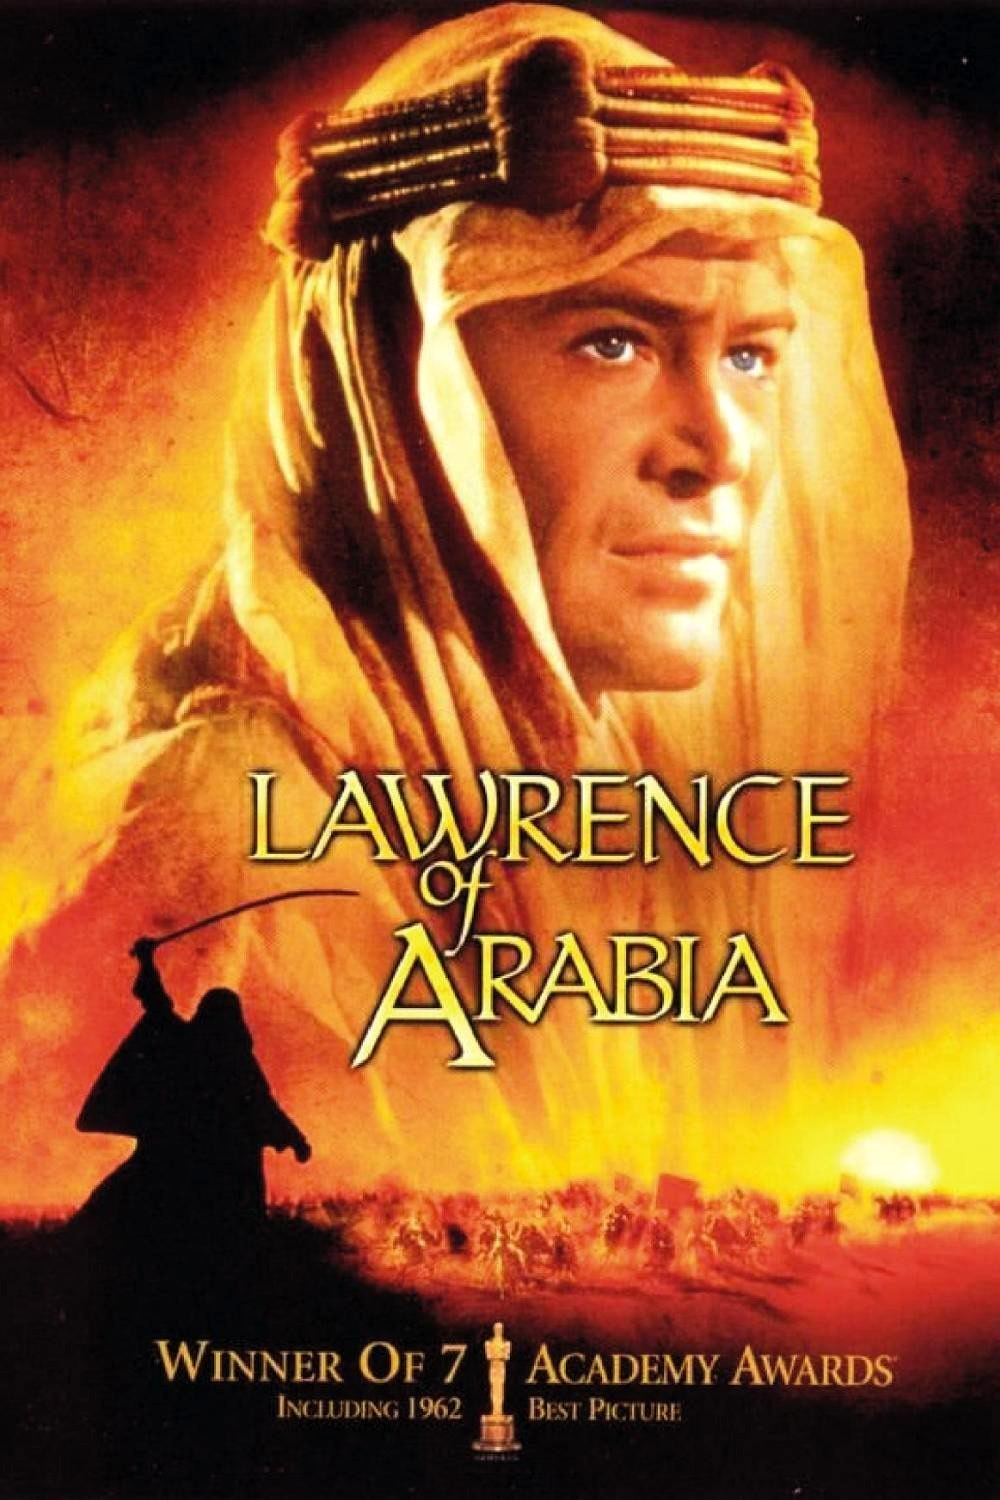 阿拉伯的劳伦斯/沙漠枭雄 Lawrence.of.Arabia.1962.DISC1.2160p.BluRay.REMUX.HEVC.DTS-HD.MA.TrueHD.7.1.Atmos-FGT 72.99GB-1.jpeg